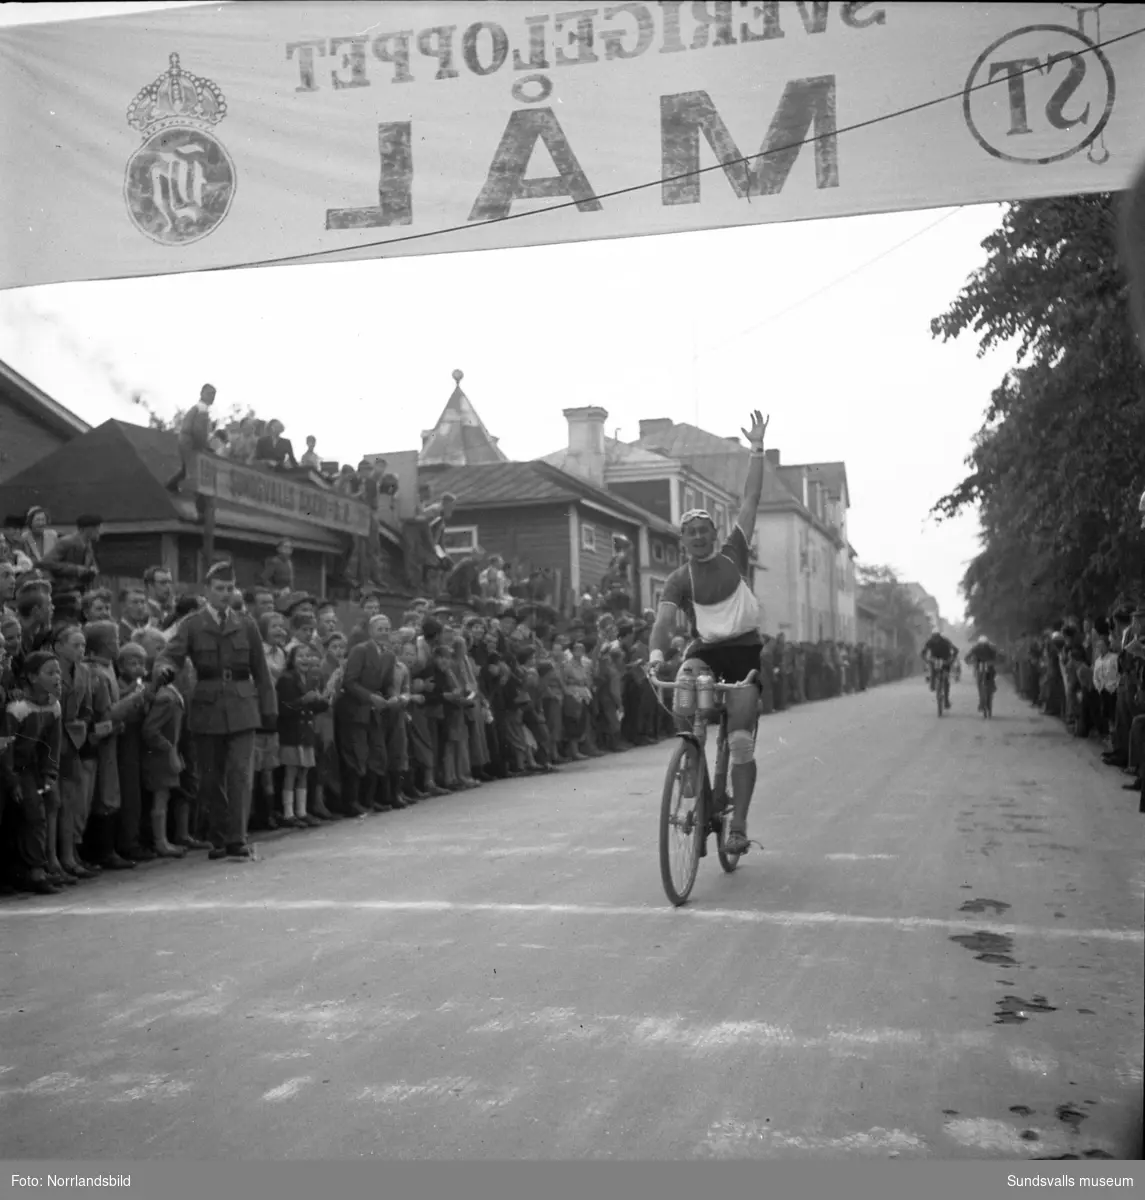 Det första Sverigeloppet på cykel passerar Sundsvall. Det var ett klassiskt cykellopp från Haparanda till Ystad som arrangerades sammanlagt tio gånger mellan 1951 och 1965. Deltagarna tog sig fram med brukscyklar utrustade med Husqvarnas 2-växlade Novo-nav längs bitvis leriga Riksväg 13 som söder om Stockholm övergår till Riksväg 1.